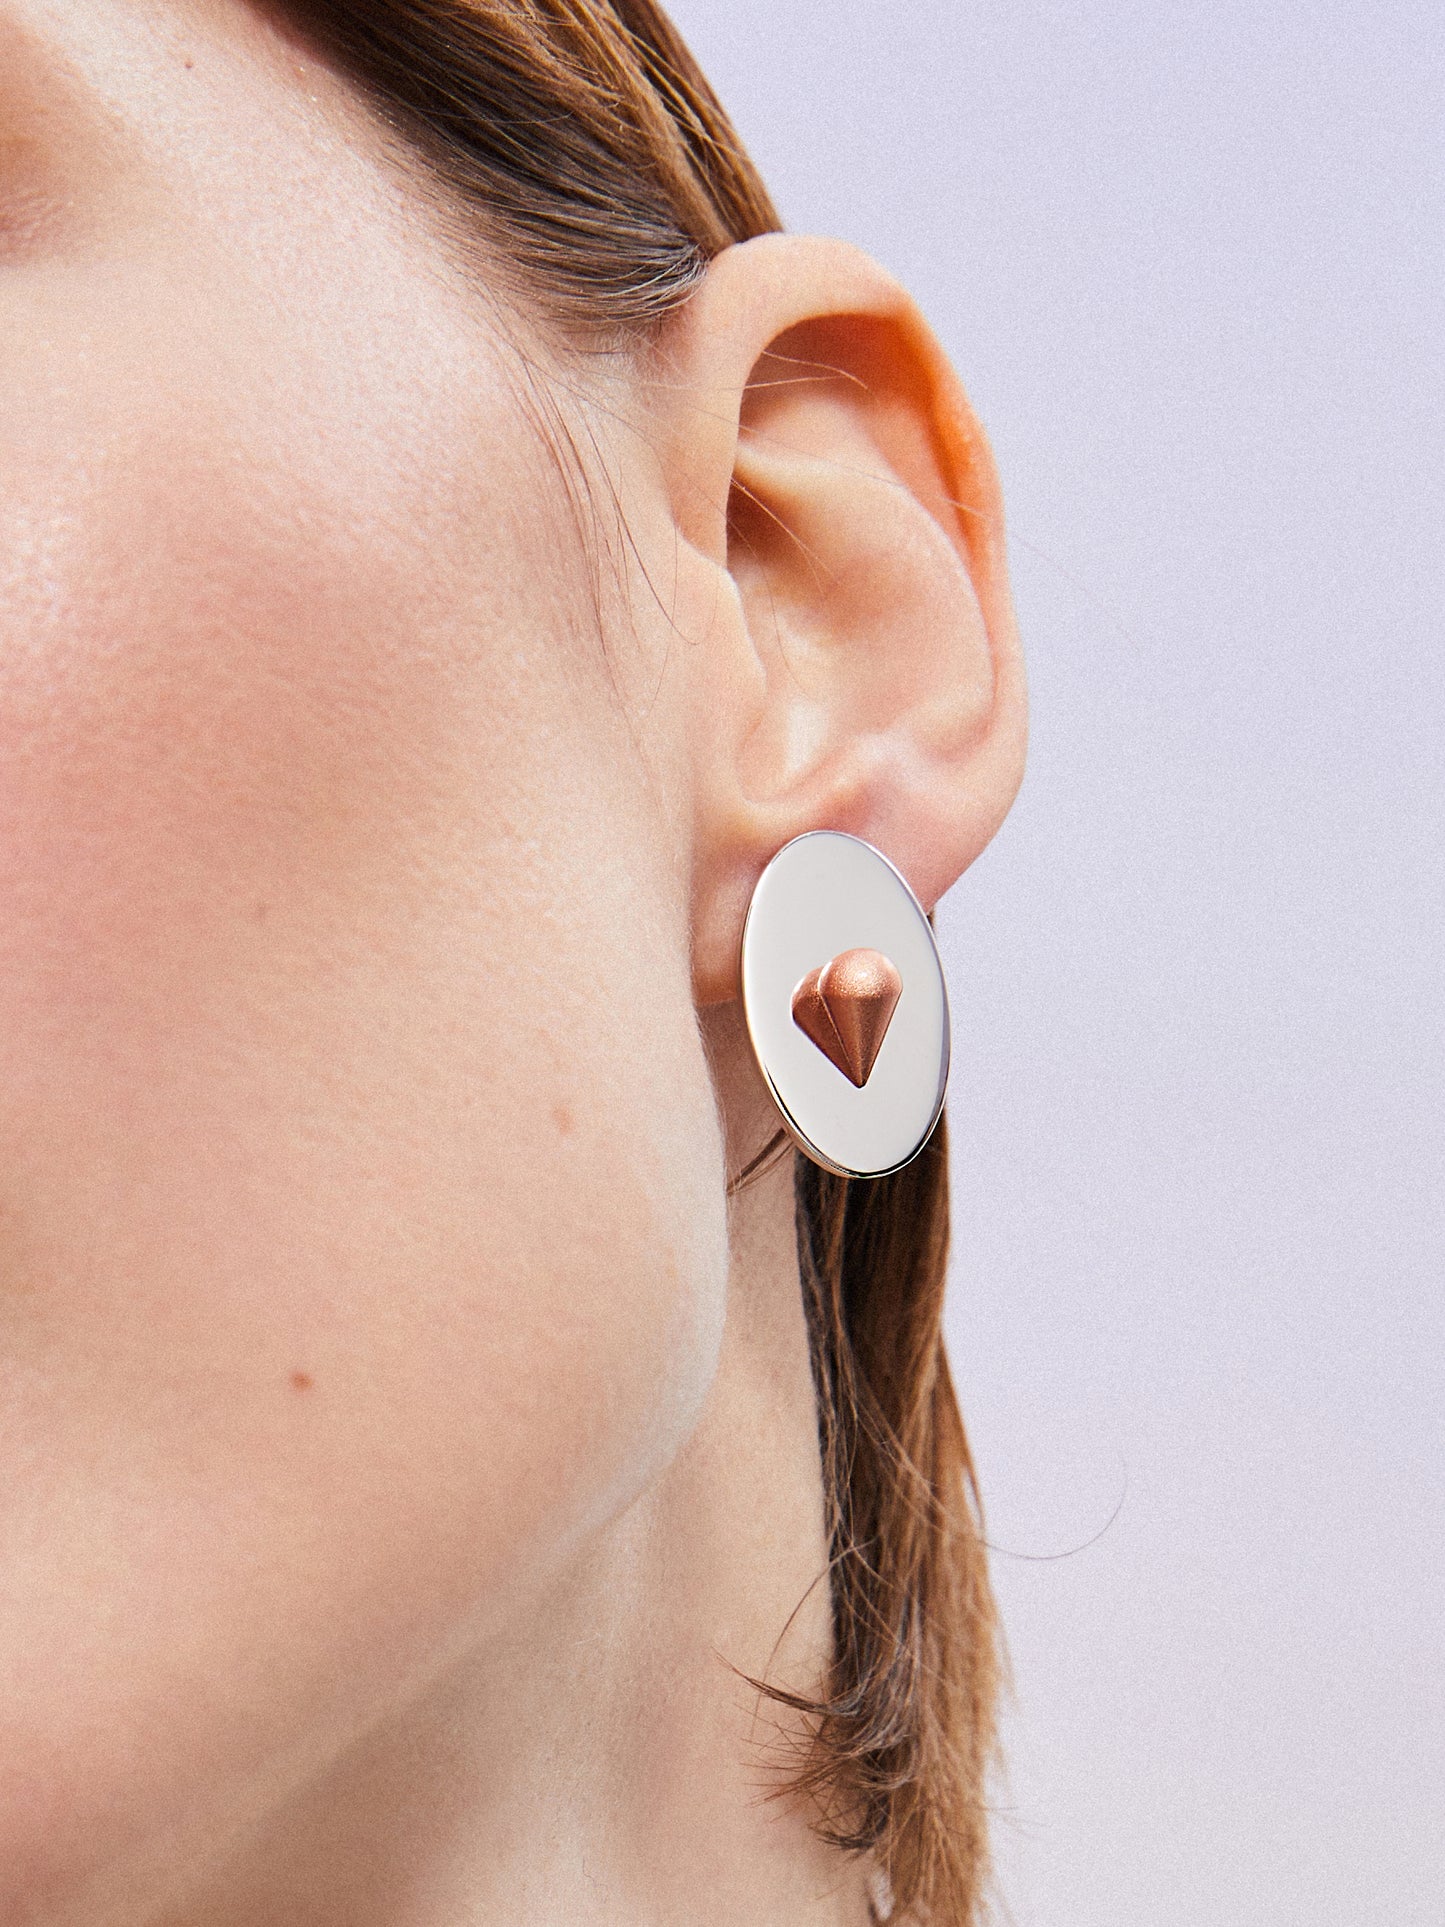 Mirroring Heart Earrings